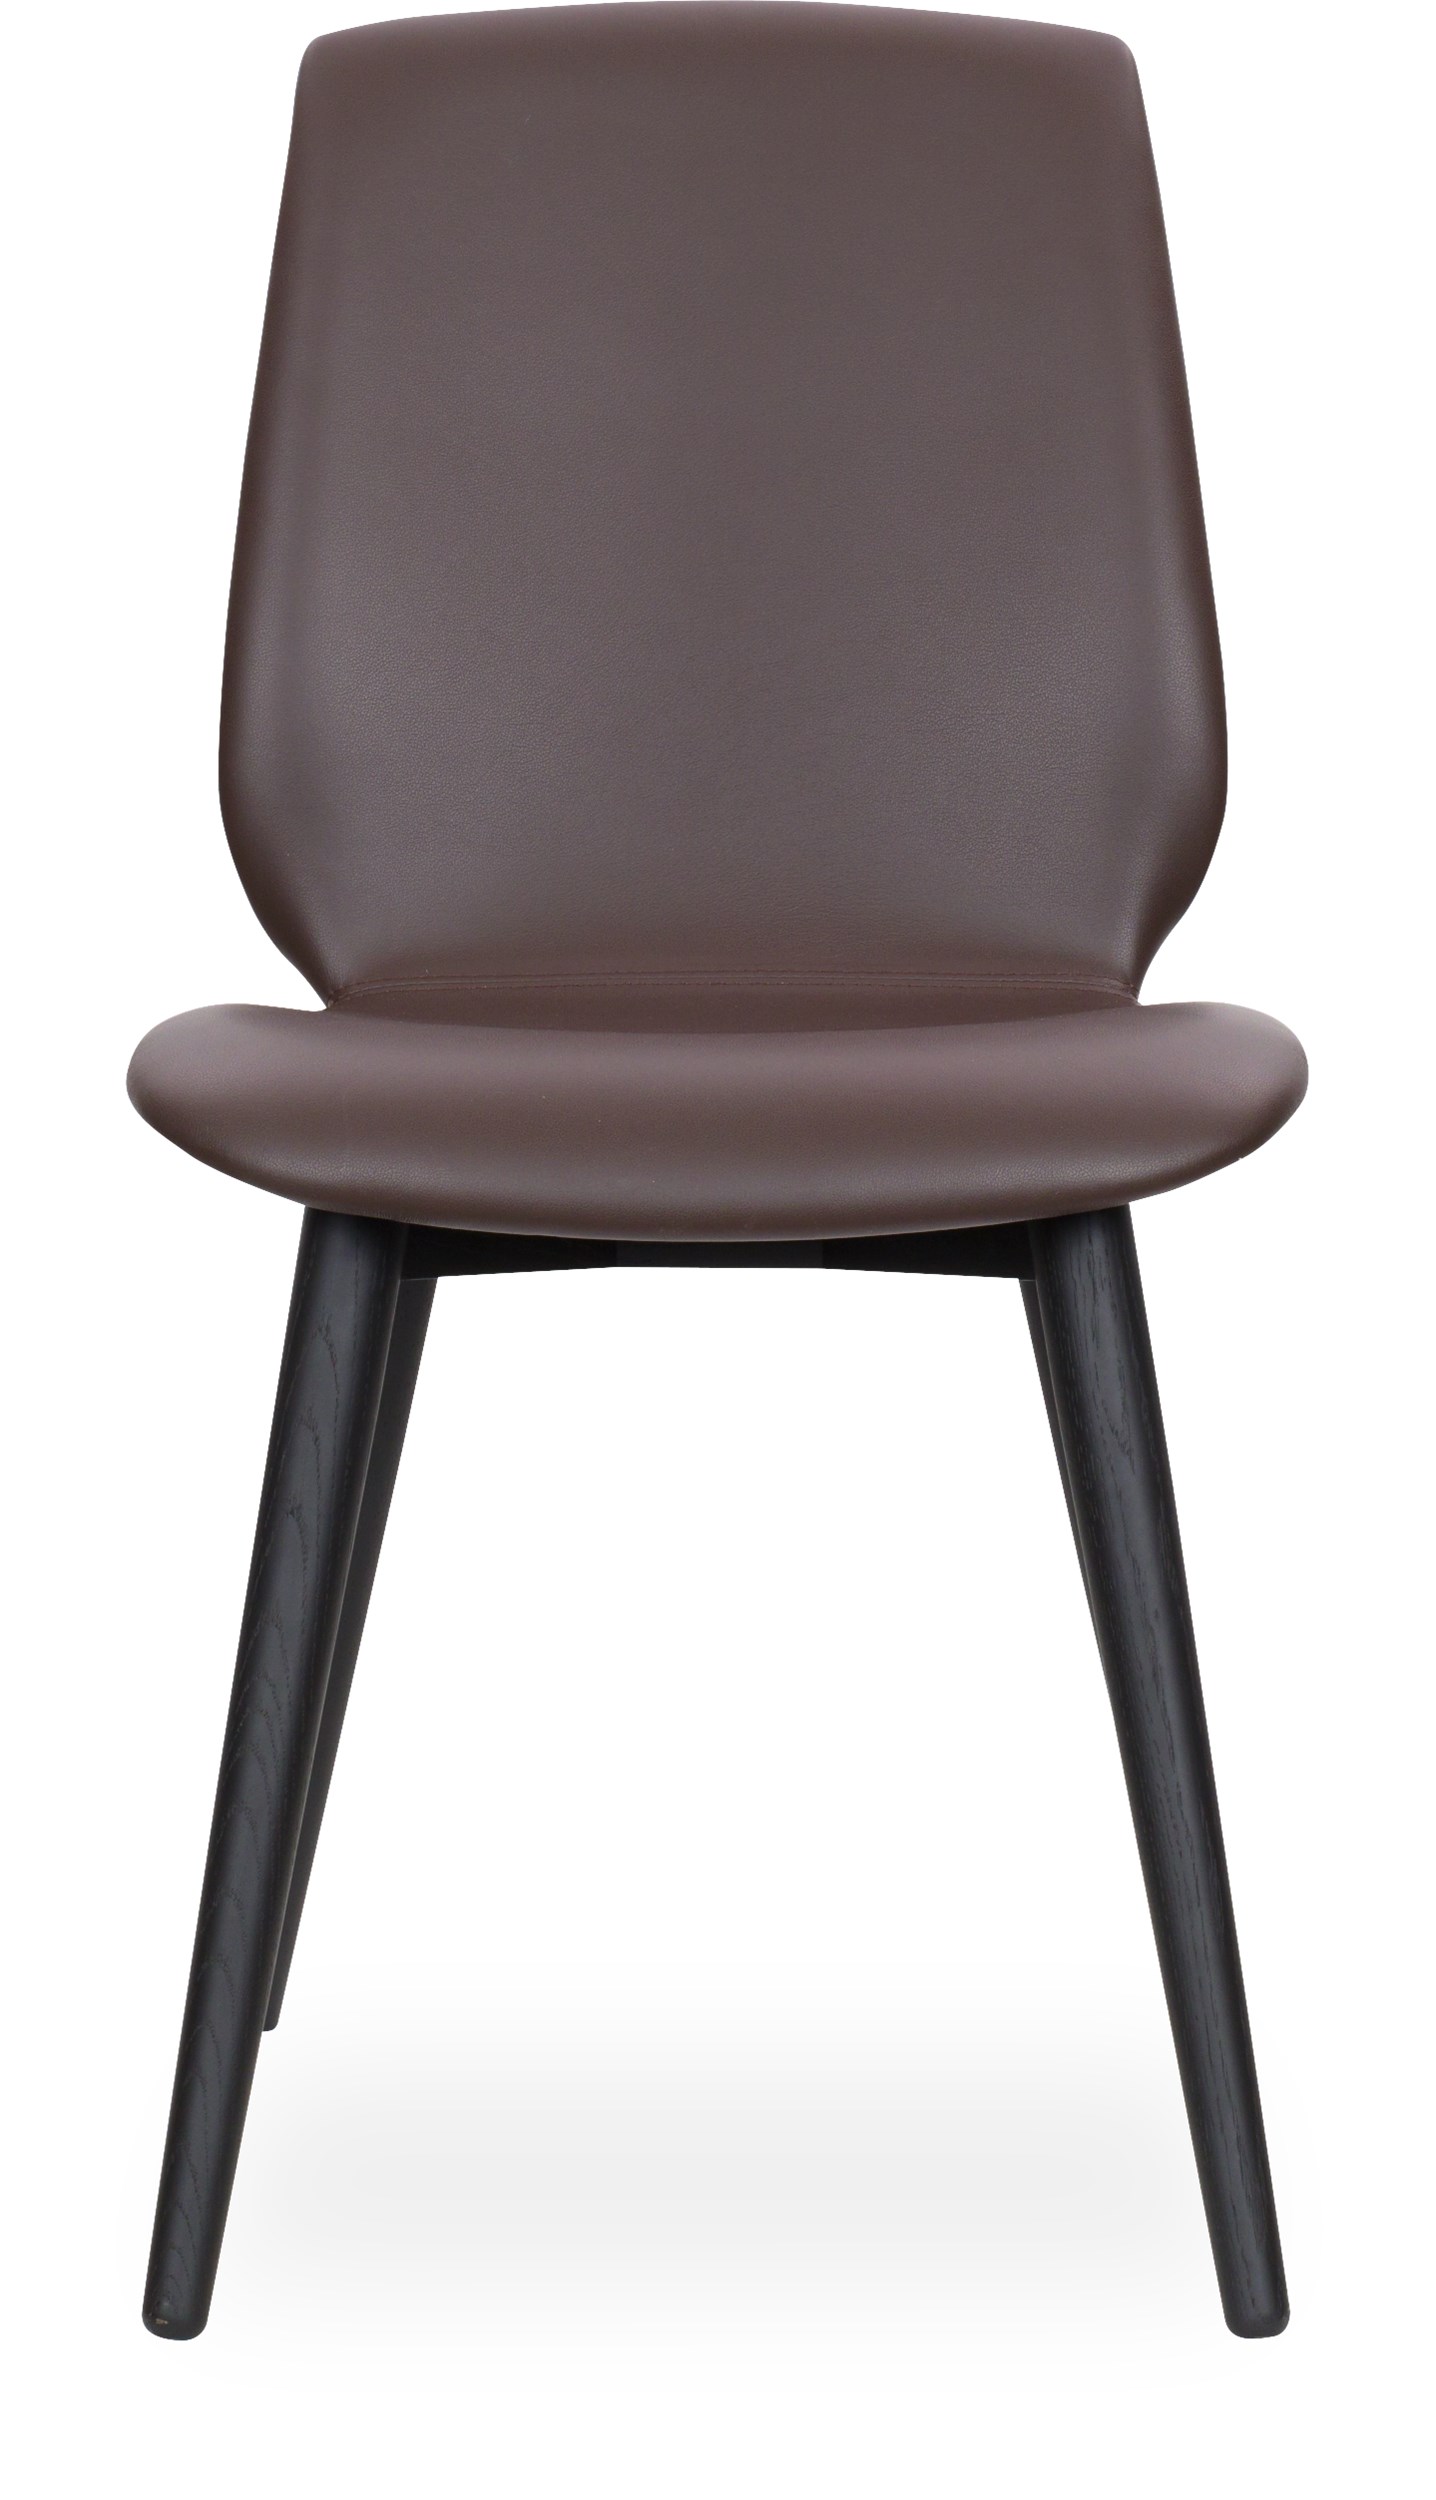 Share XL Curve matstol - Sits 5004 choko läder och curveben i svartbetsad mattlackad ek